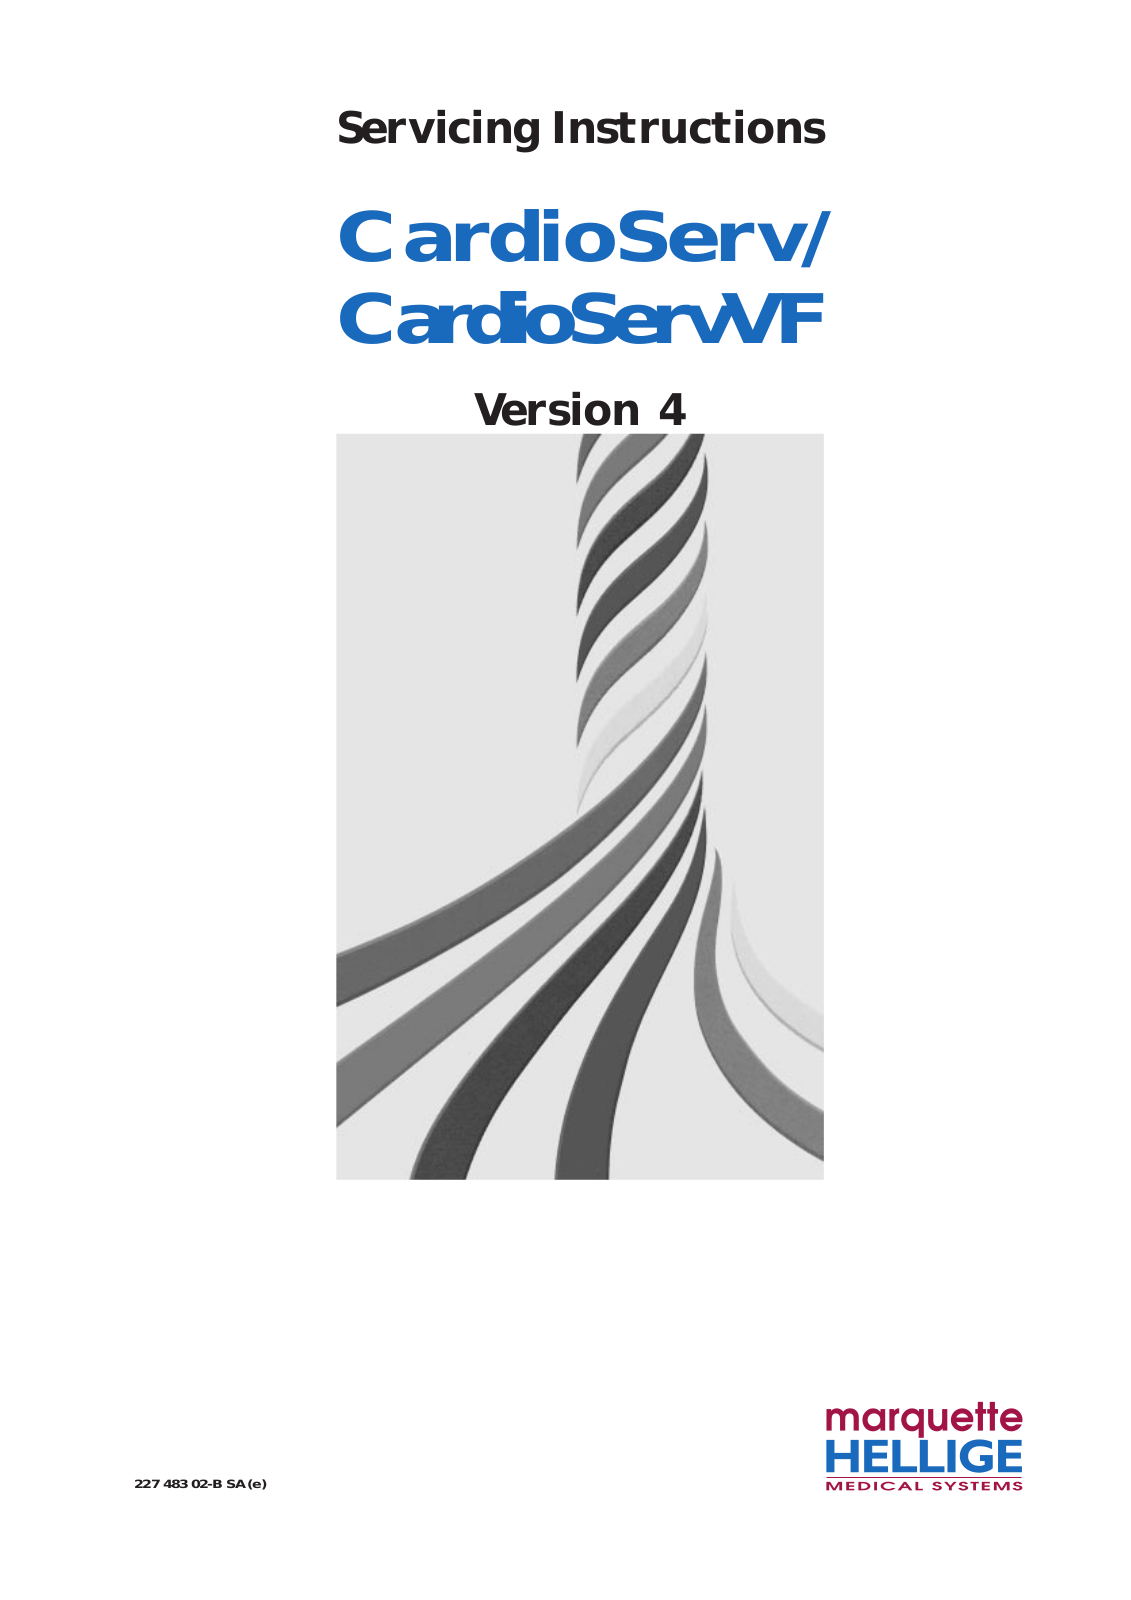 Marquette-hellige CardioServ, CardioServVF User manual